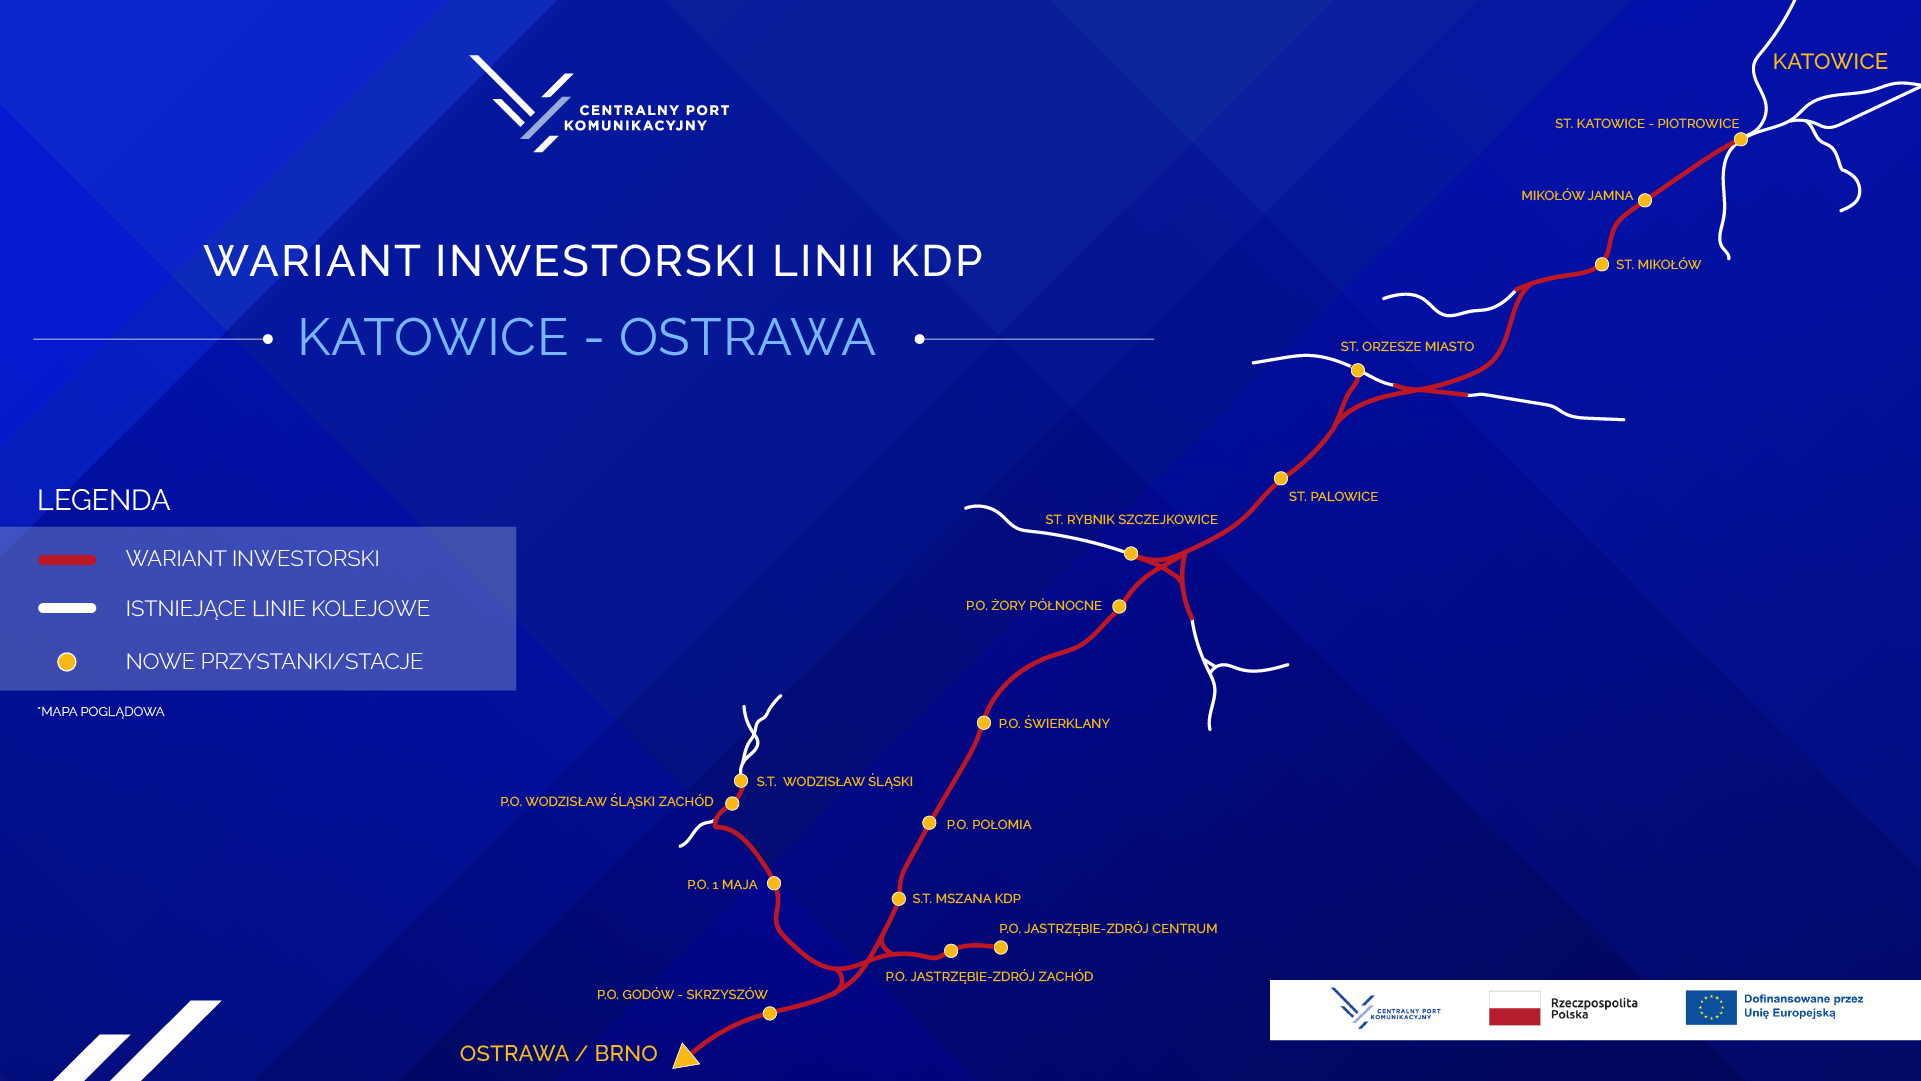 Wariant inwestorski linii KPD Katowic - Ostrawa. Źródło: CPK